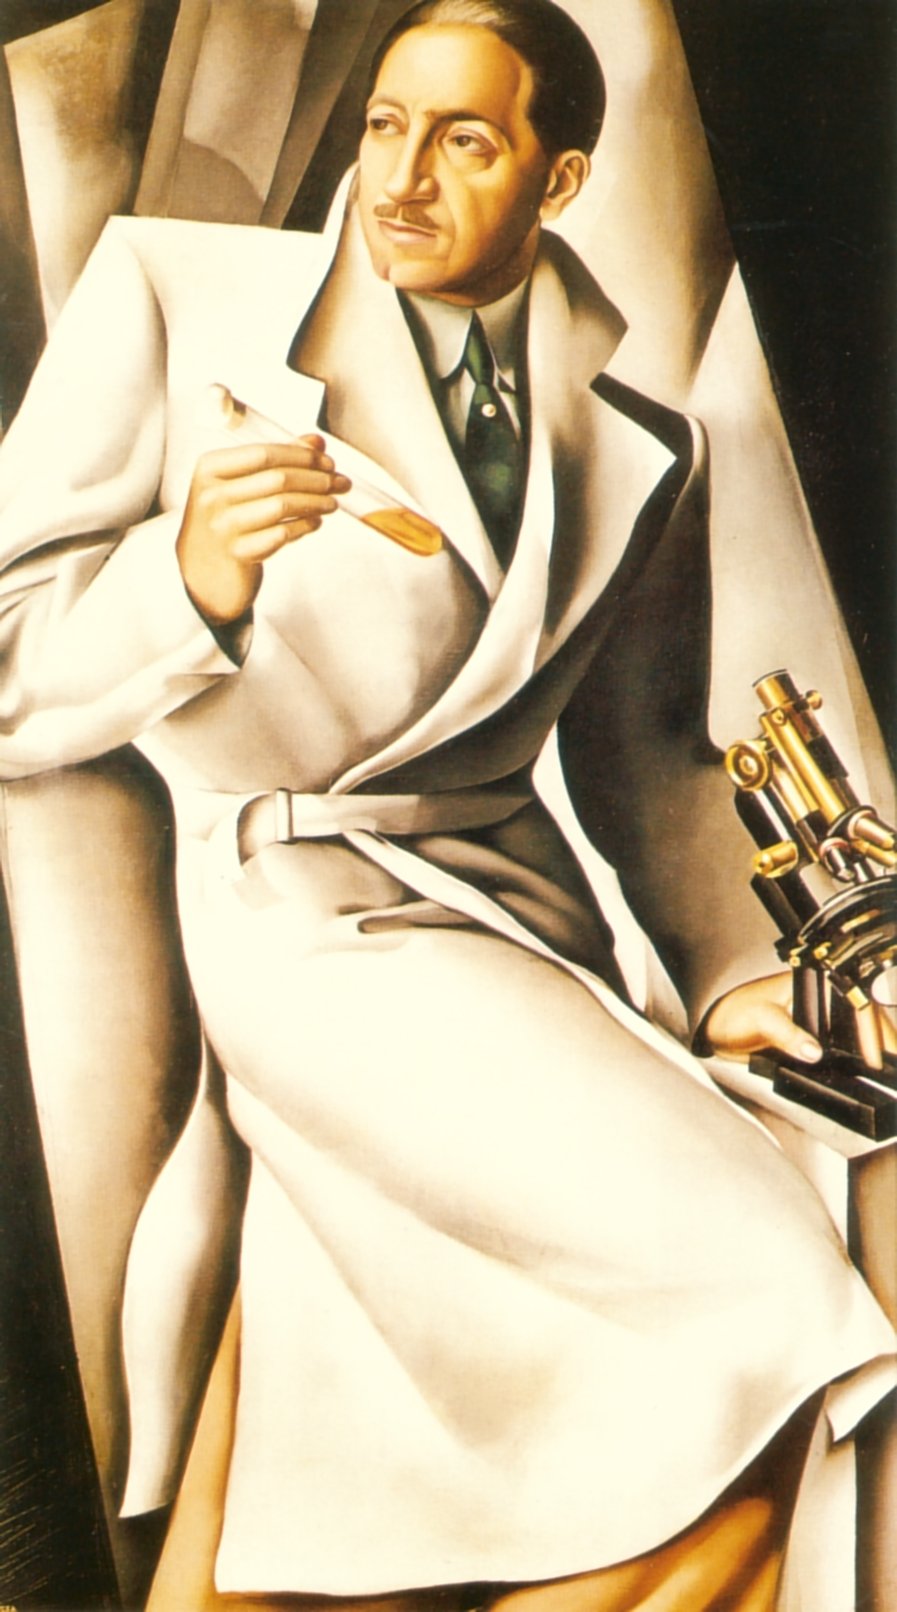 Retrato do Dr. Boucard by Tamara de Lempicka - 1929 - - coleção privada